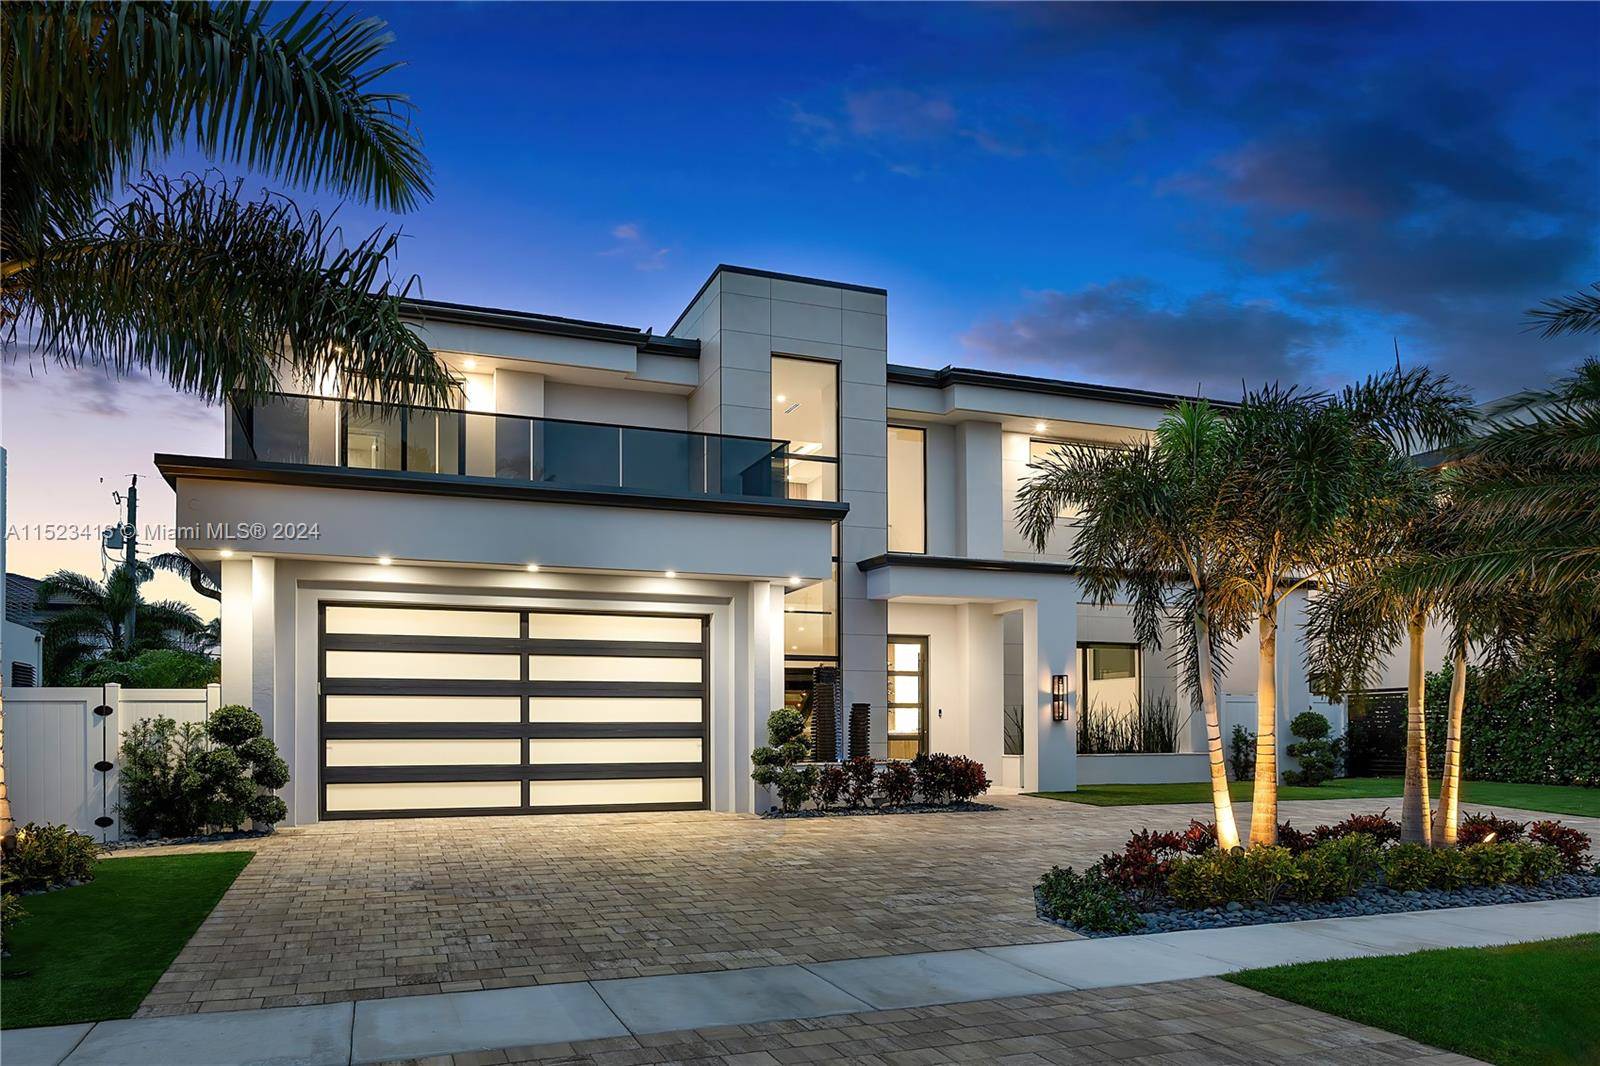 Welcome to luxury living in Boca Villas, Boca Raton's premier neighborhood.